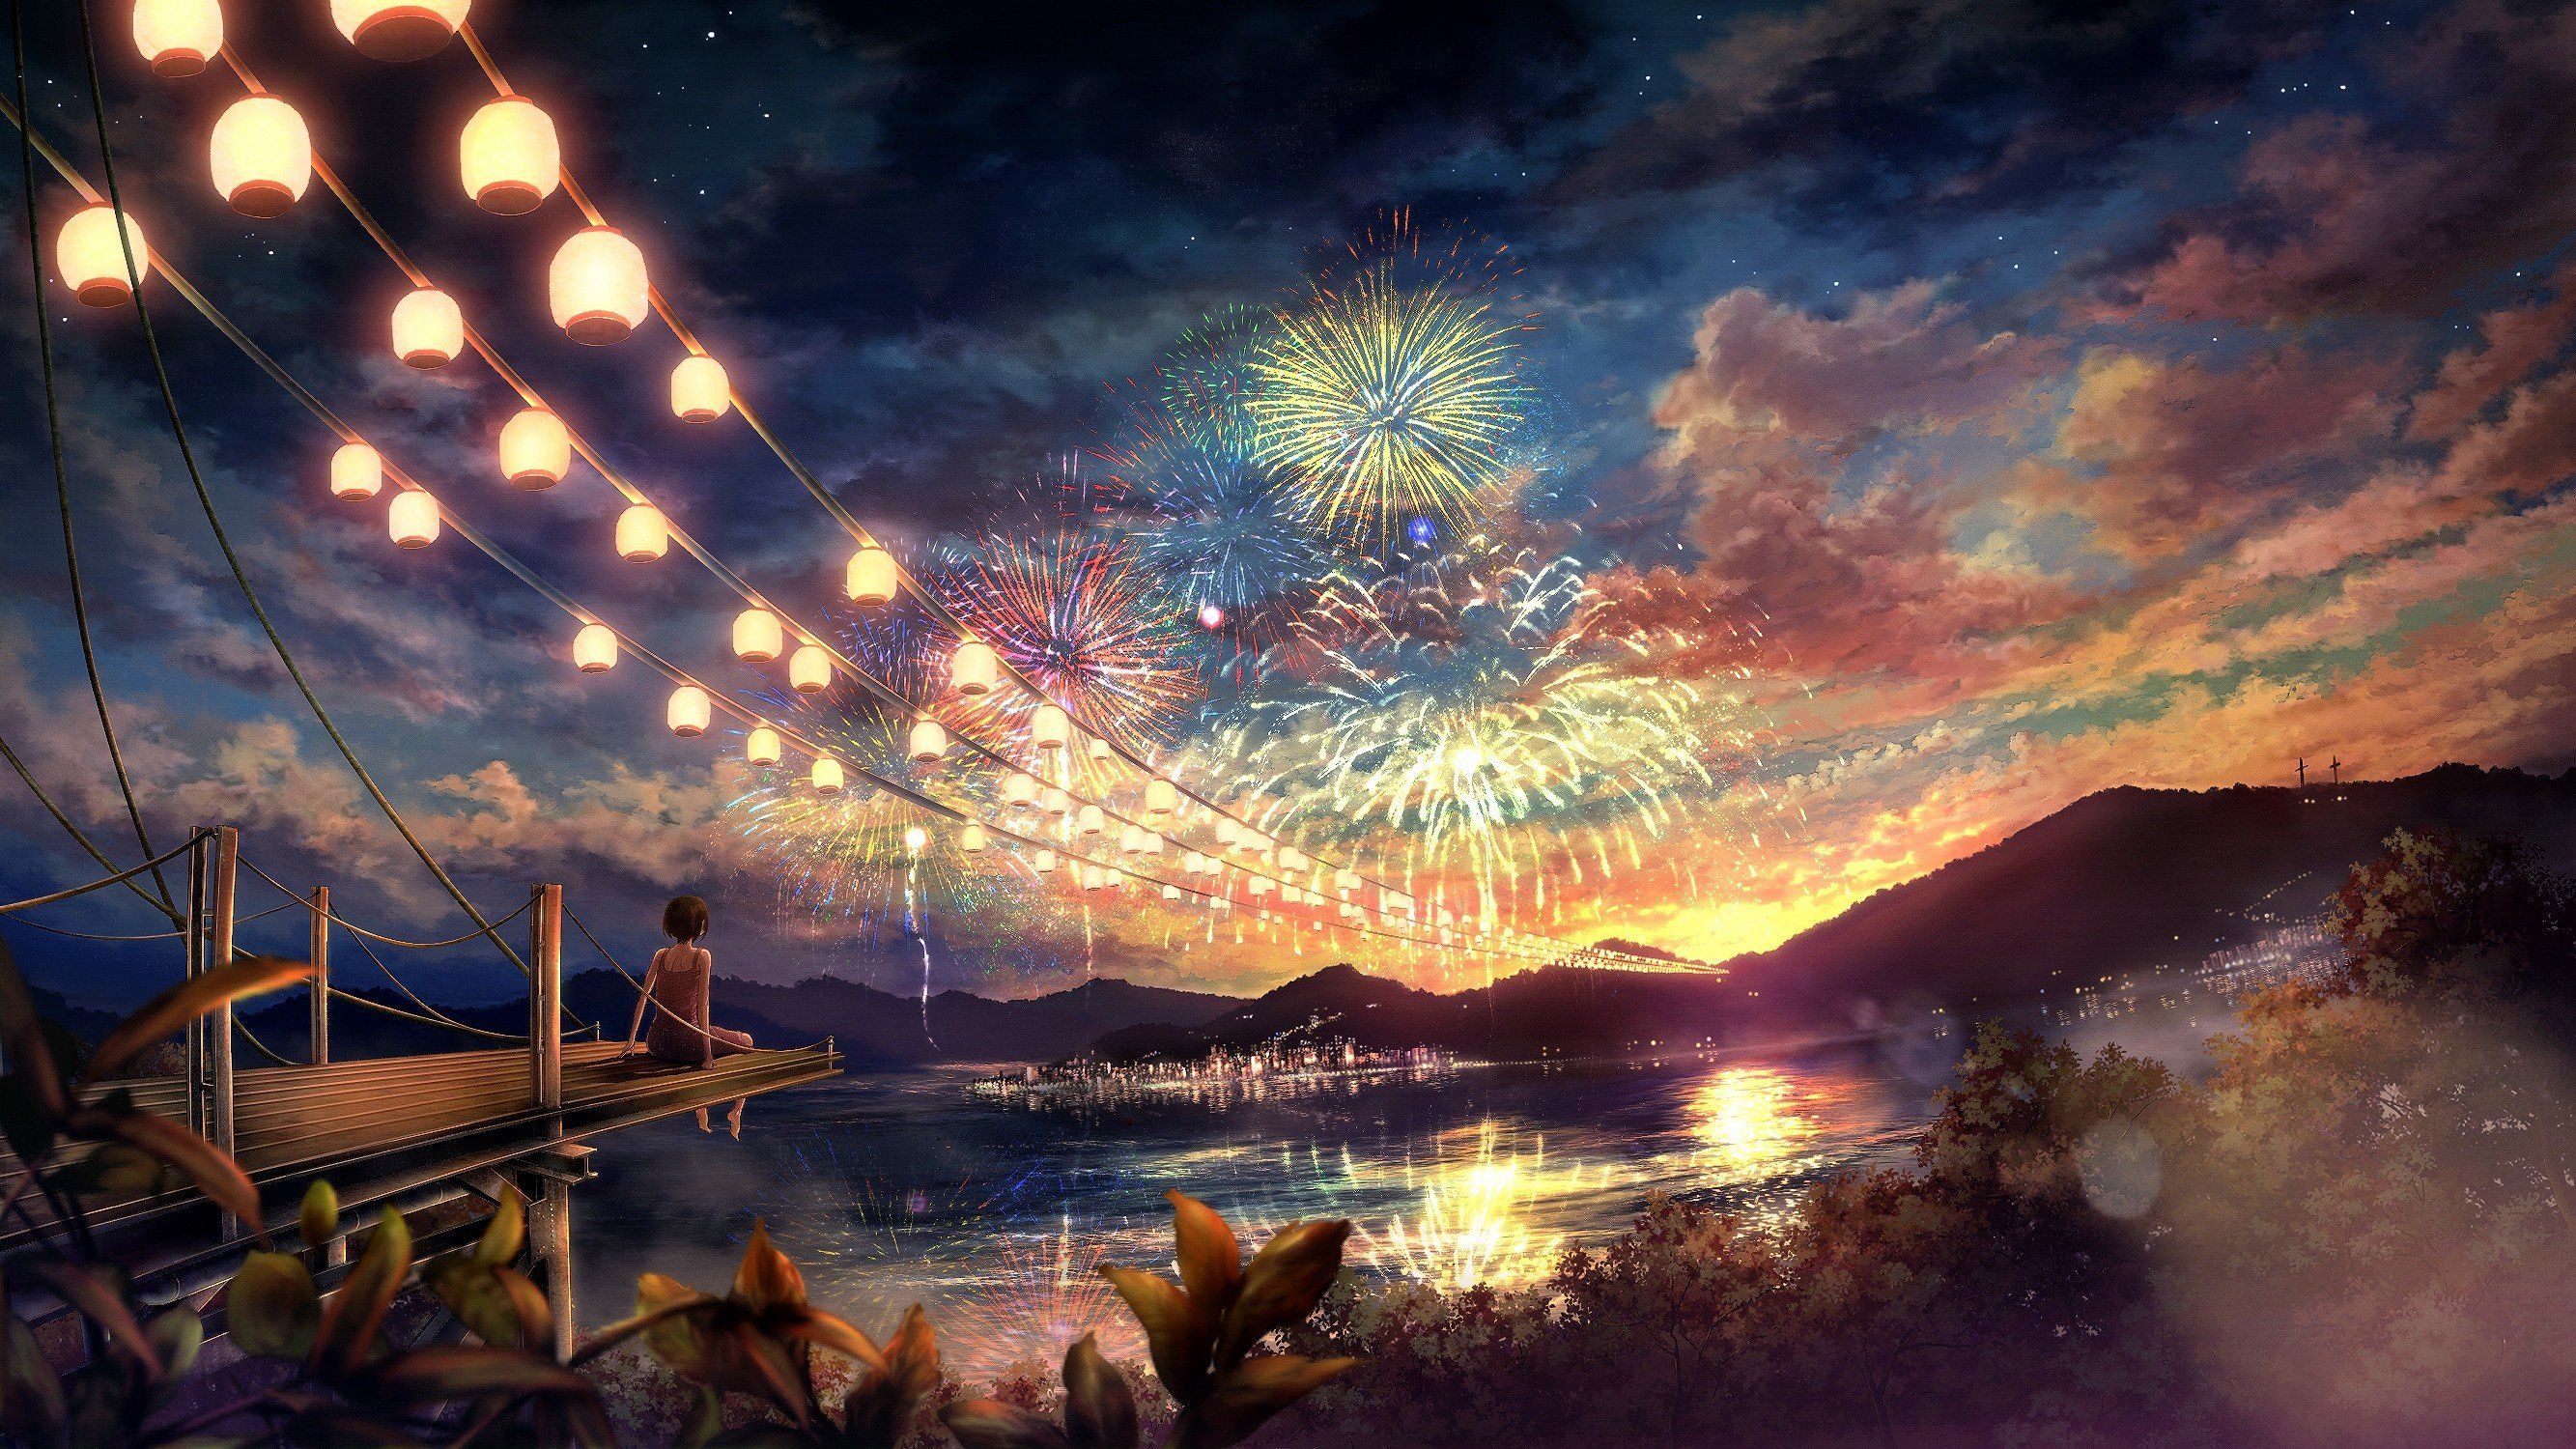 Beautiful Anime Landscape Wallpaper 4K Ultra HD